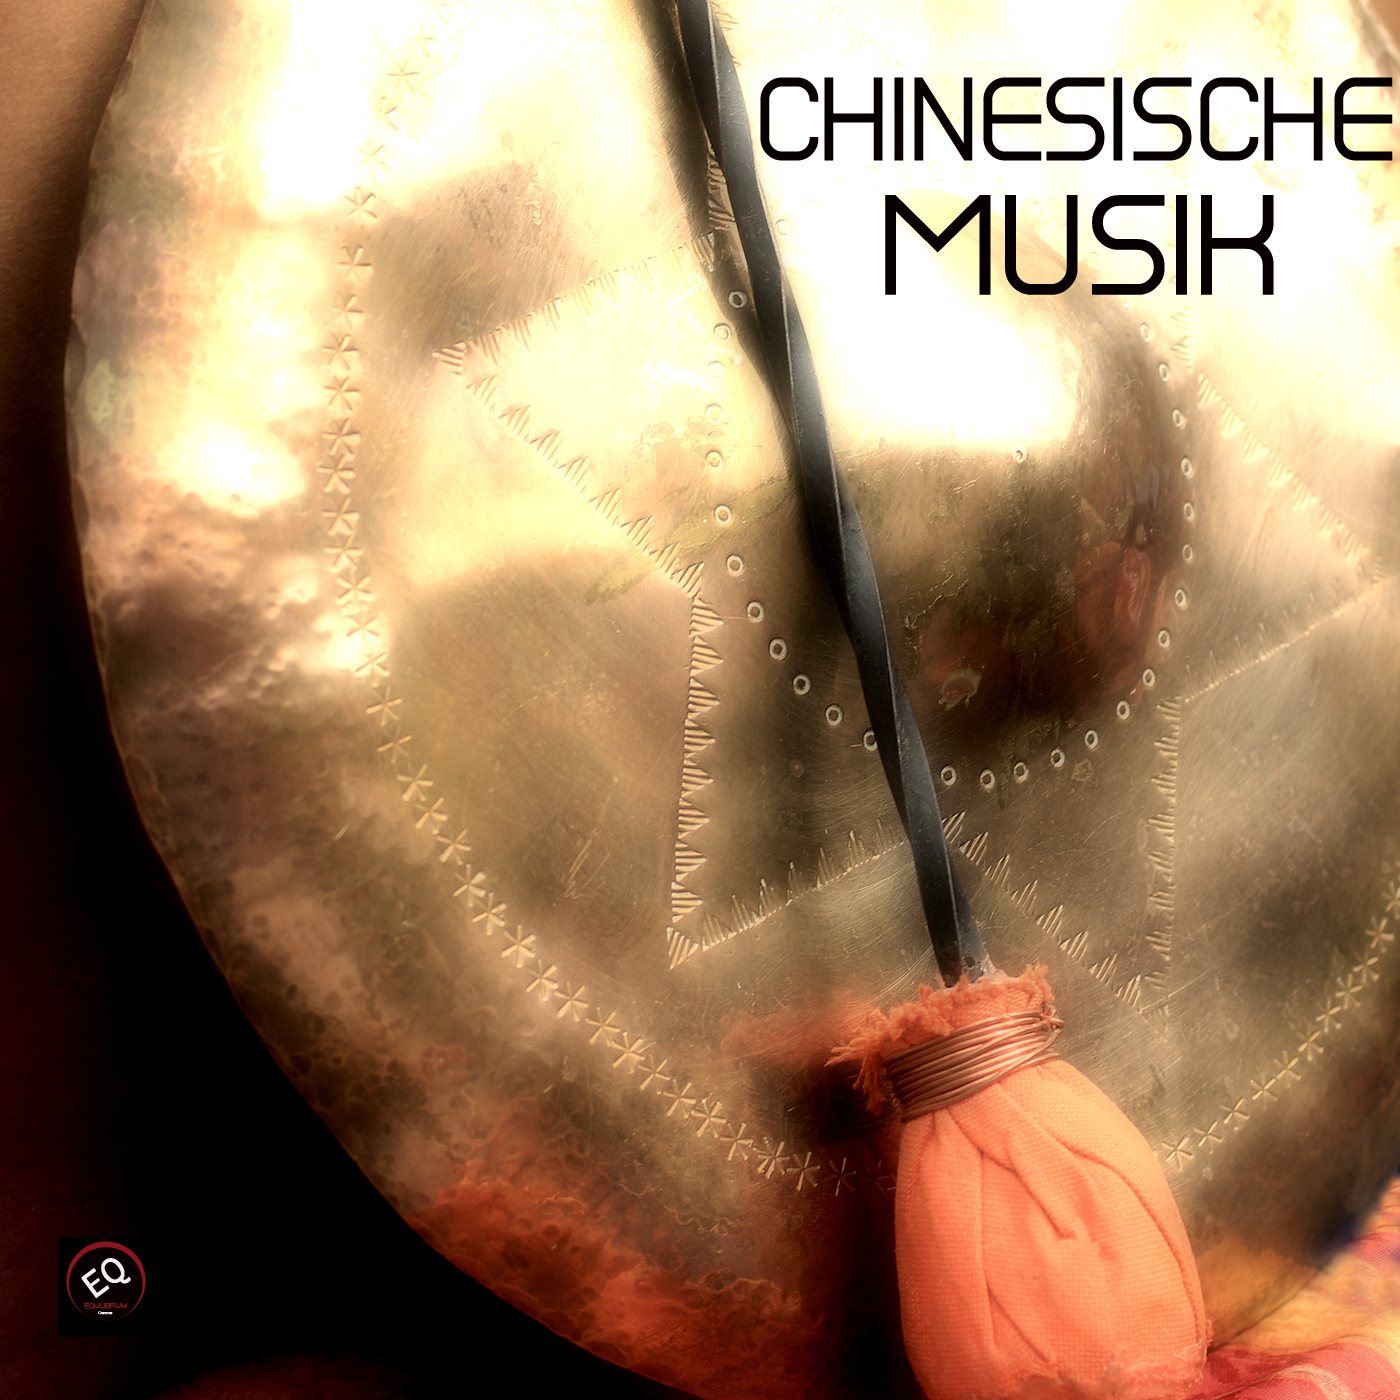 Chinesische Musik - Traditionelle Chinesische Musik und Klassische Musik, Chinesische Meditationsmusik